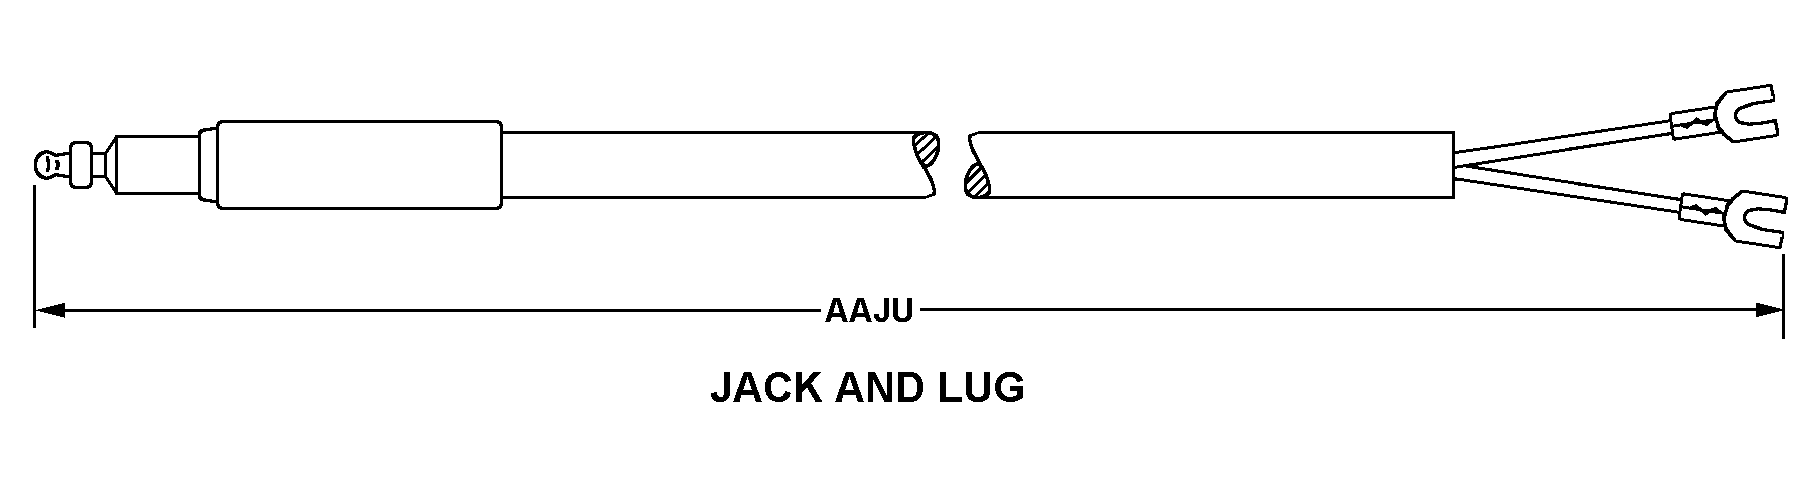 JACK AND LUG style nsn 5995-00-237-4150